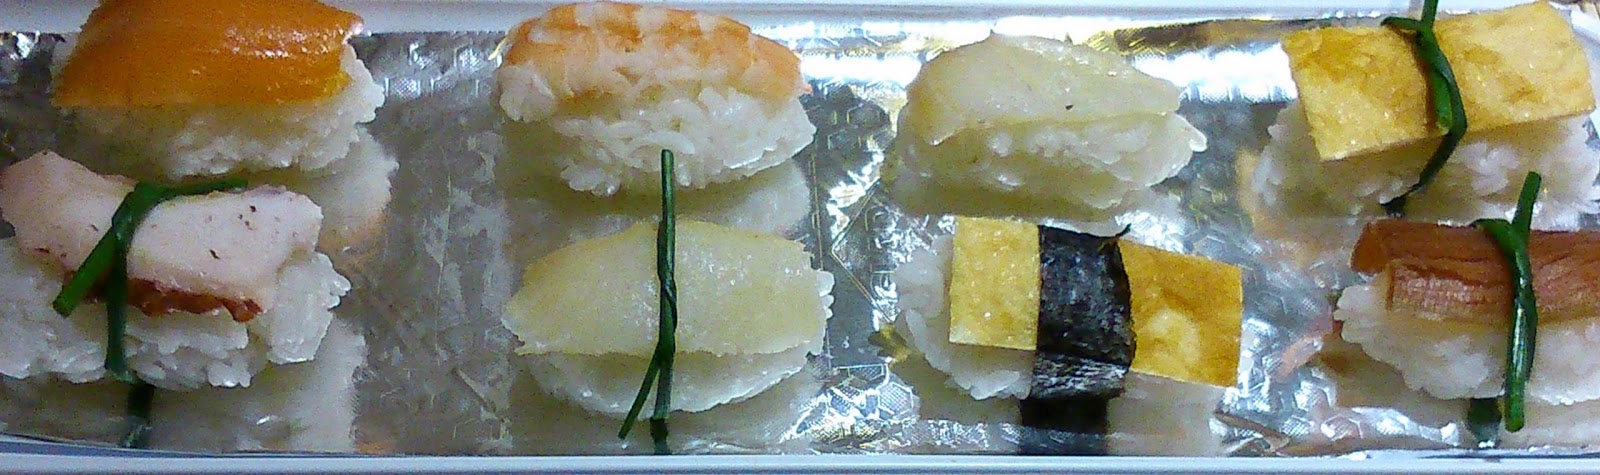 Sushi Niguiri
